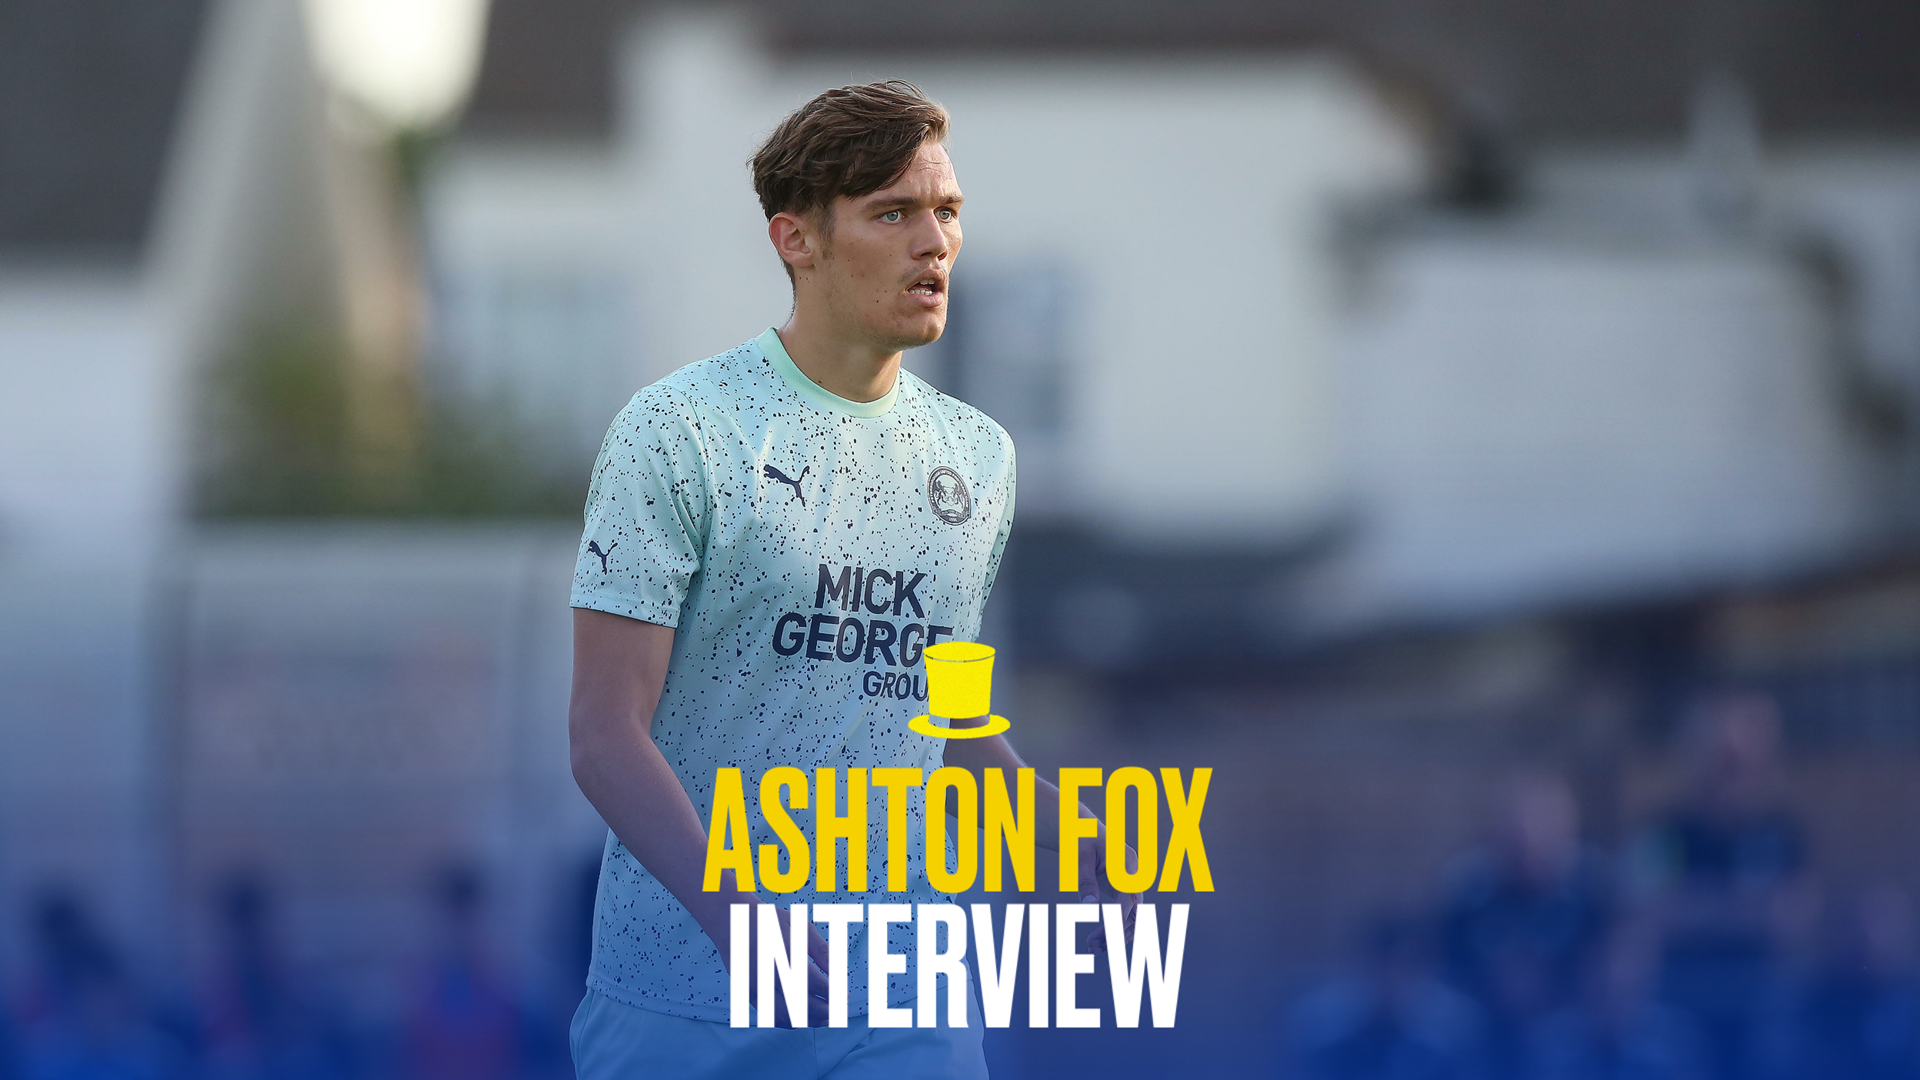 Ashton interview